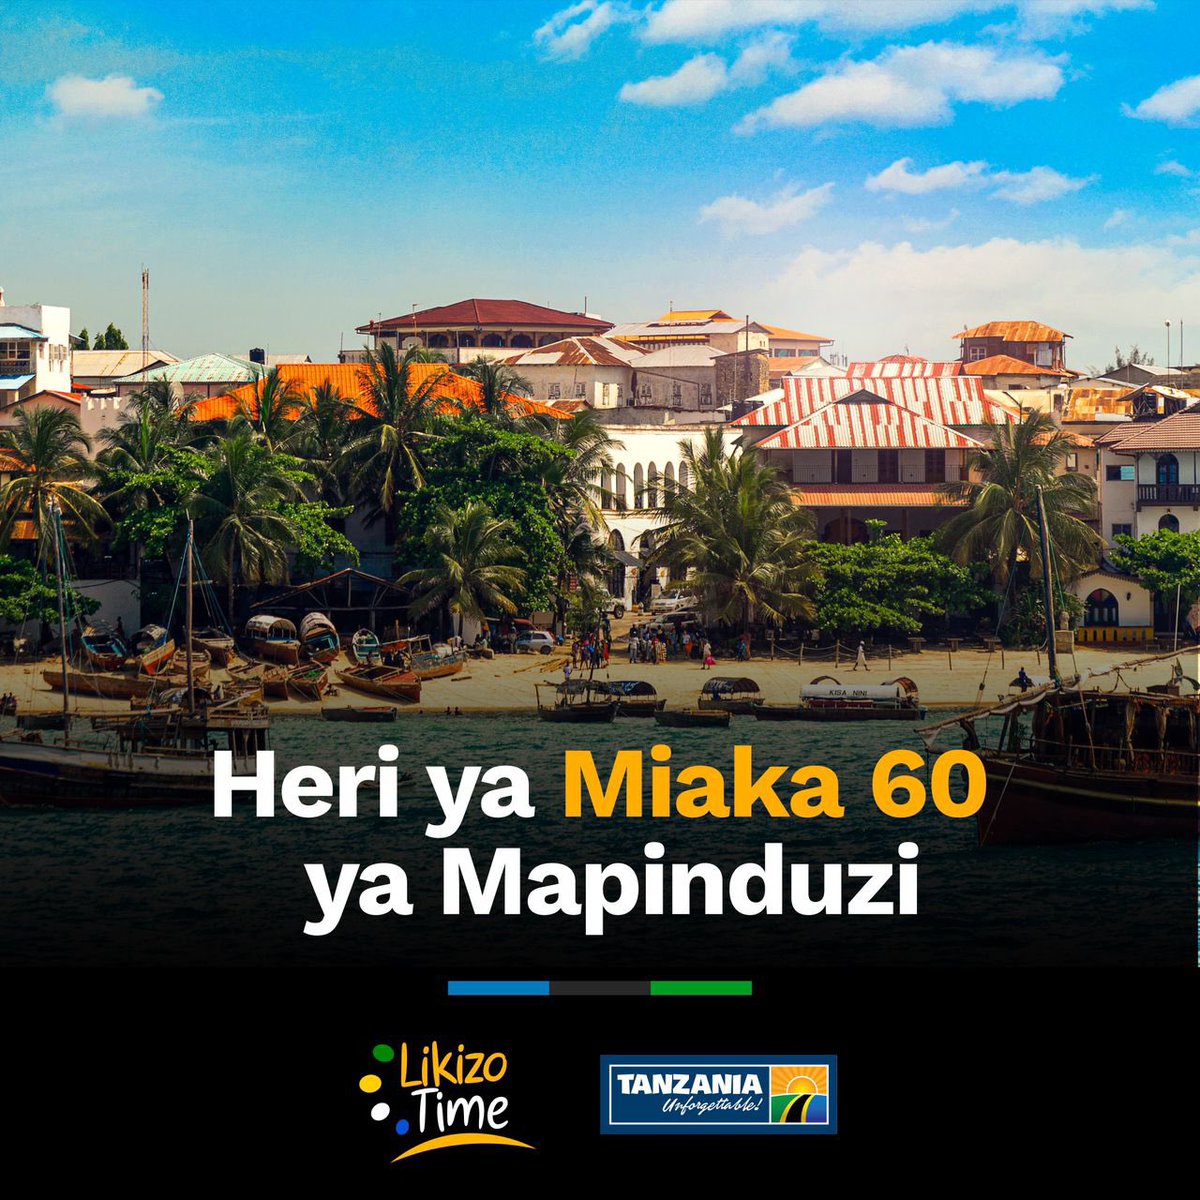 Heri ya miaka 60 ya mapinduzi Zanzibar. Unajua nini kuhusu Mapinduzi?
#SikuyaMapinduzi
#TanzaniaUnforgettable
#LikizoTime